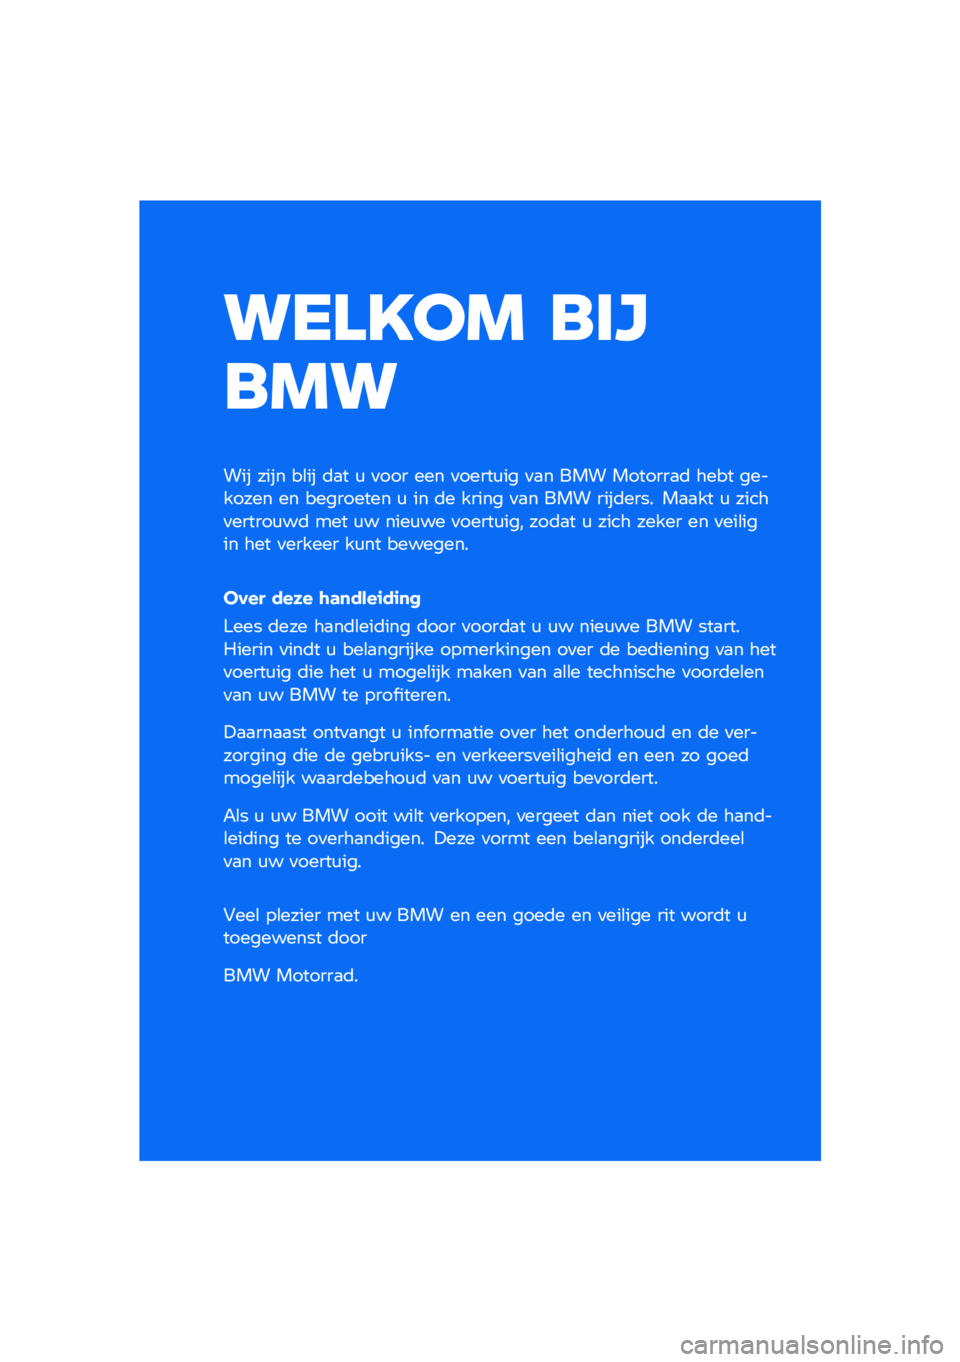 BMW MOTORRAD F 750 GS 2020  Handleiding (in Dutch) ������ �\b�	�

�\b��
��� ���� ��\b�� �	�
� �\f �
��� ��� �
�����\f�� �
�
� ��� �������
�	 ���� �������� �� ��������� �\f �� �	� ���